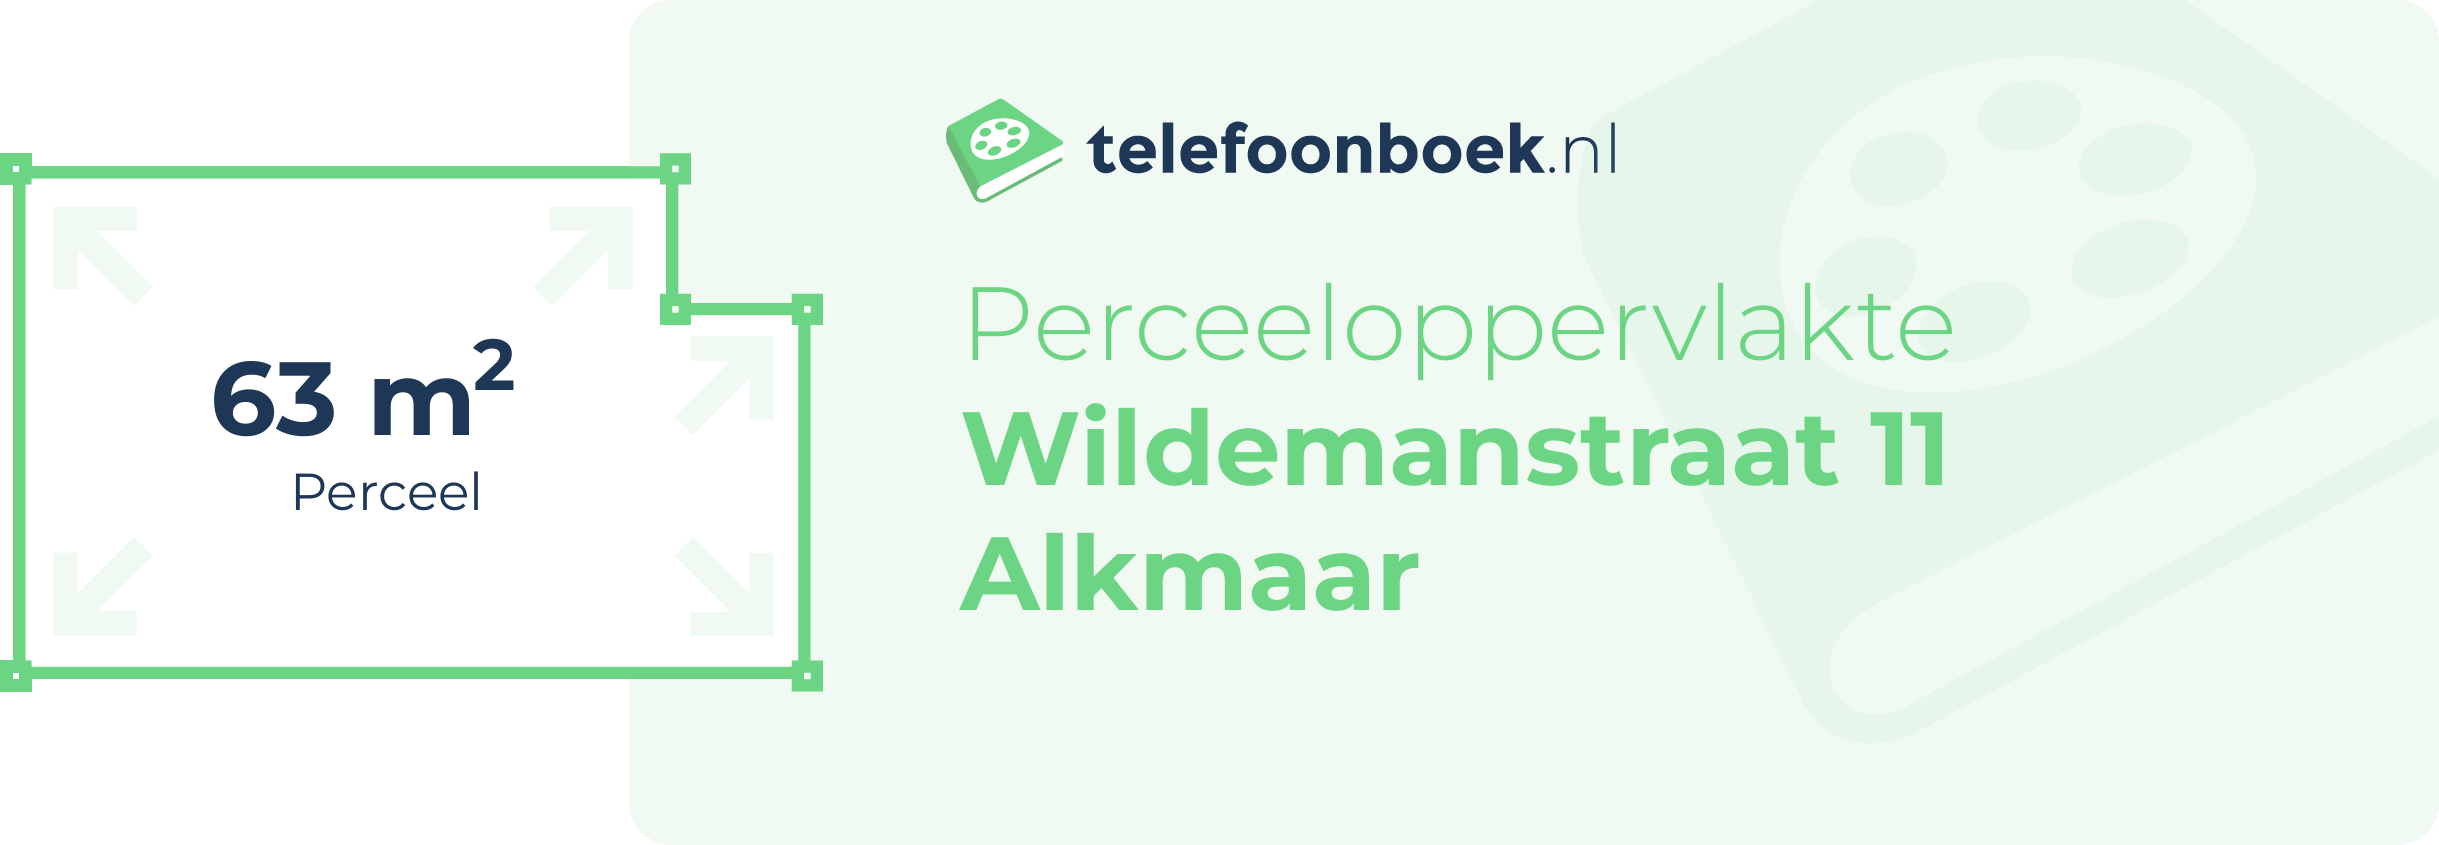 Perceeloppervlakte Wildemanstraat 11 Alkmaar